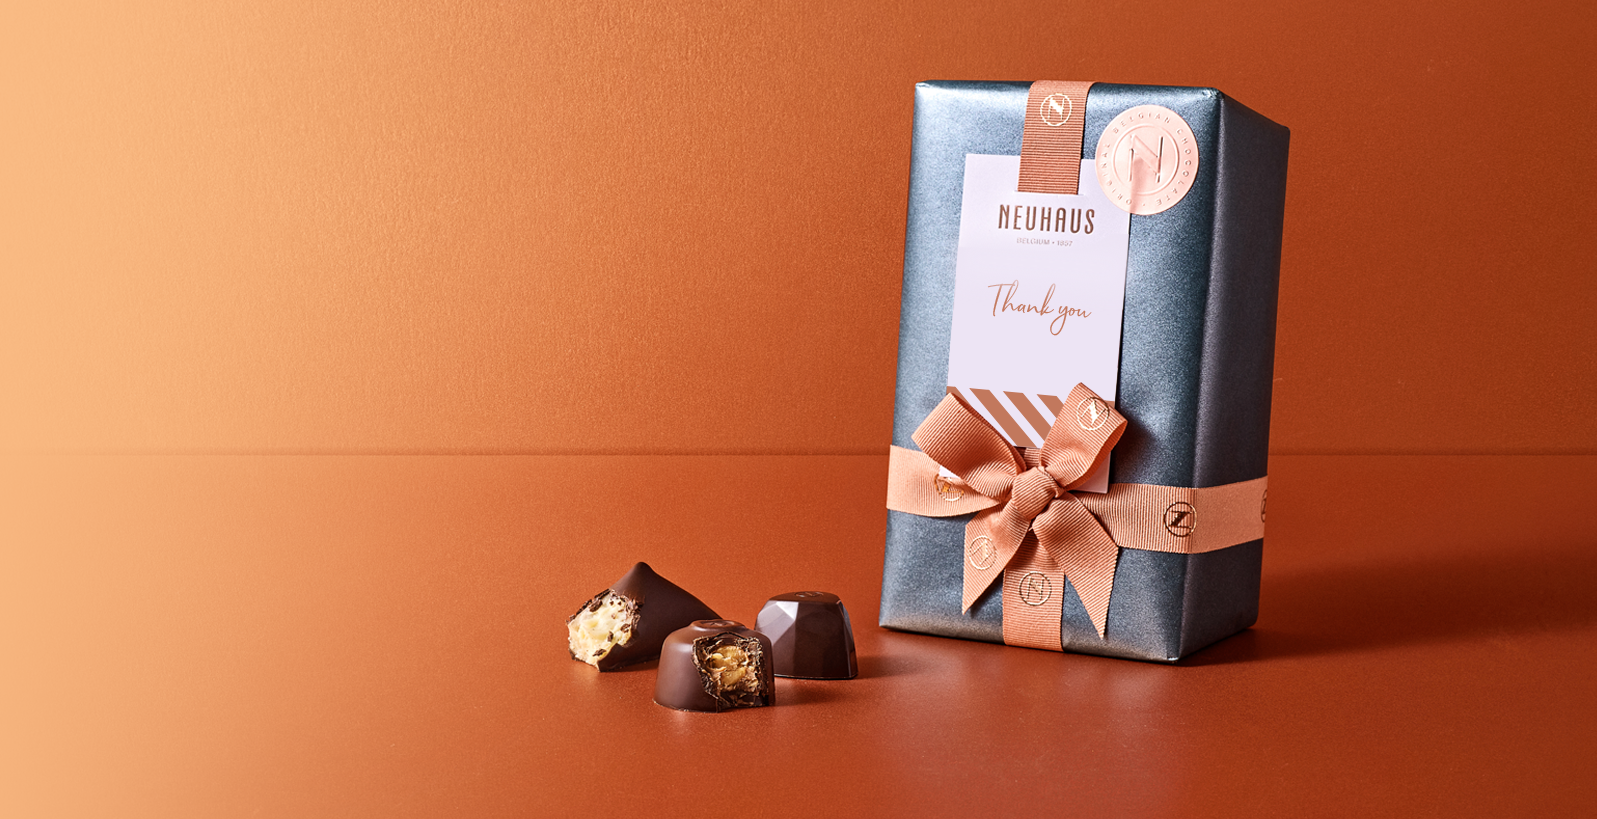 Coffret chocolat belge publicitaire - Coffret chocolat personnalisé